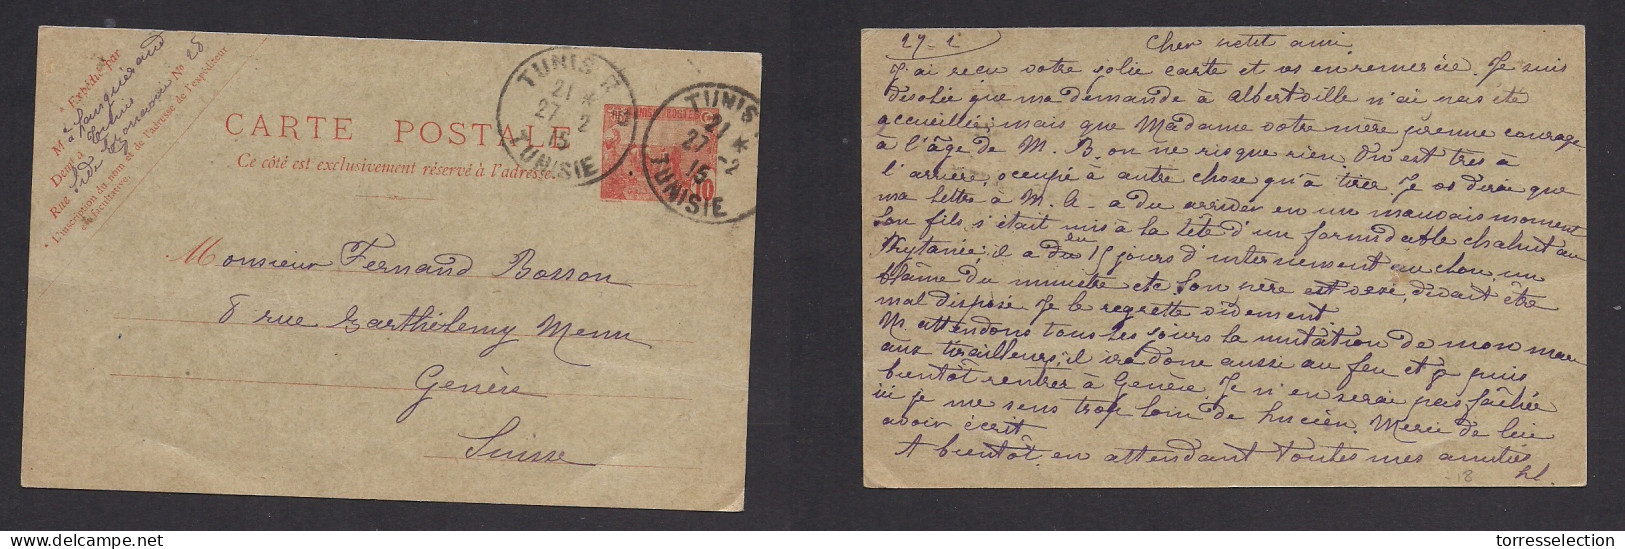 TUNISIA. 1915 (27 Febr) Tunis RP - Switzerland, Geneve. 10c Red Stat Card. VF Used. - Tunisie (1956-...)